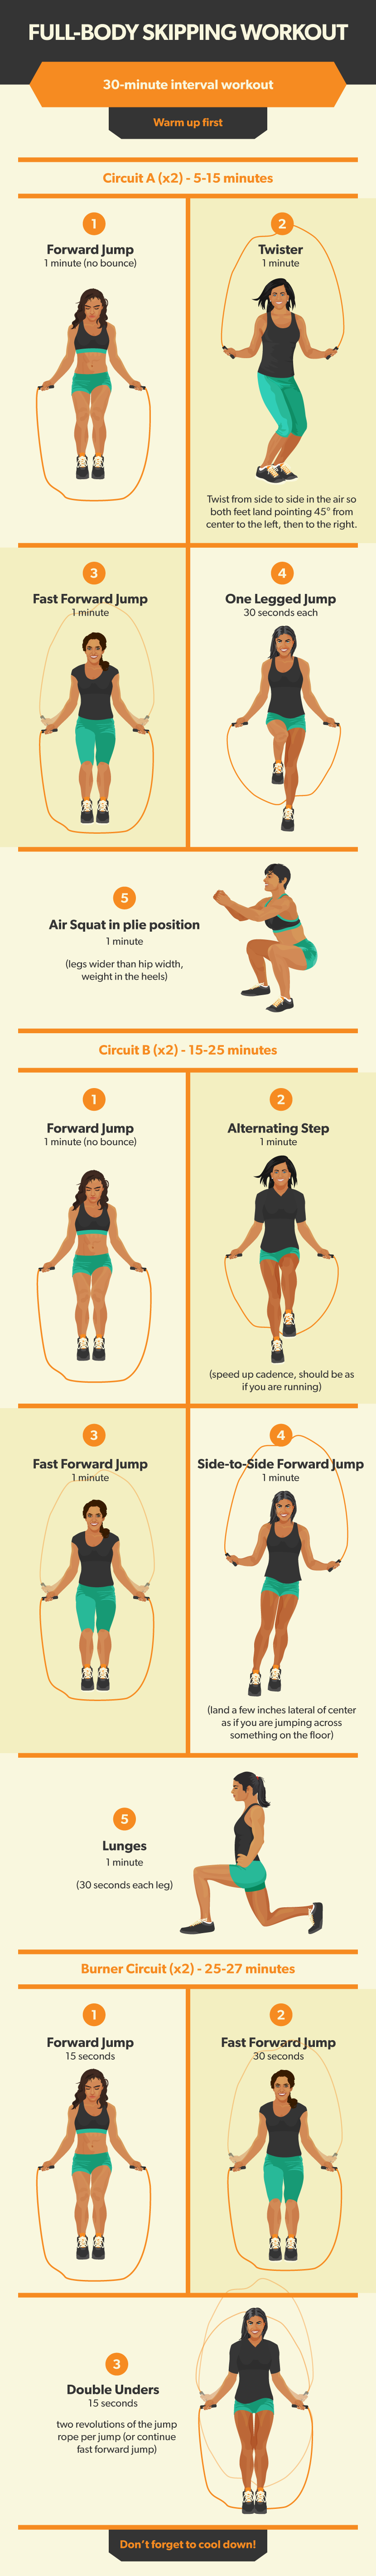 Jump Rope for an Intense Workout | Fix.com